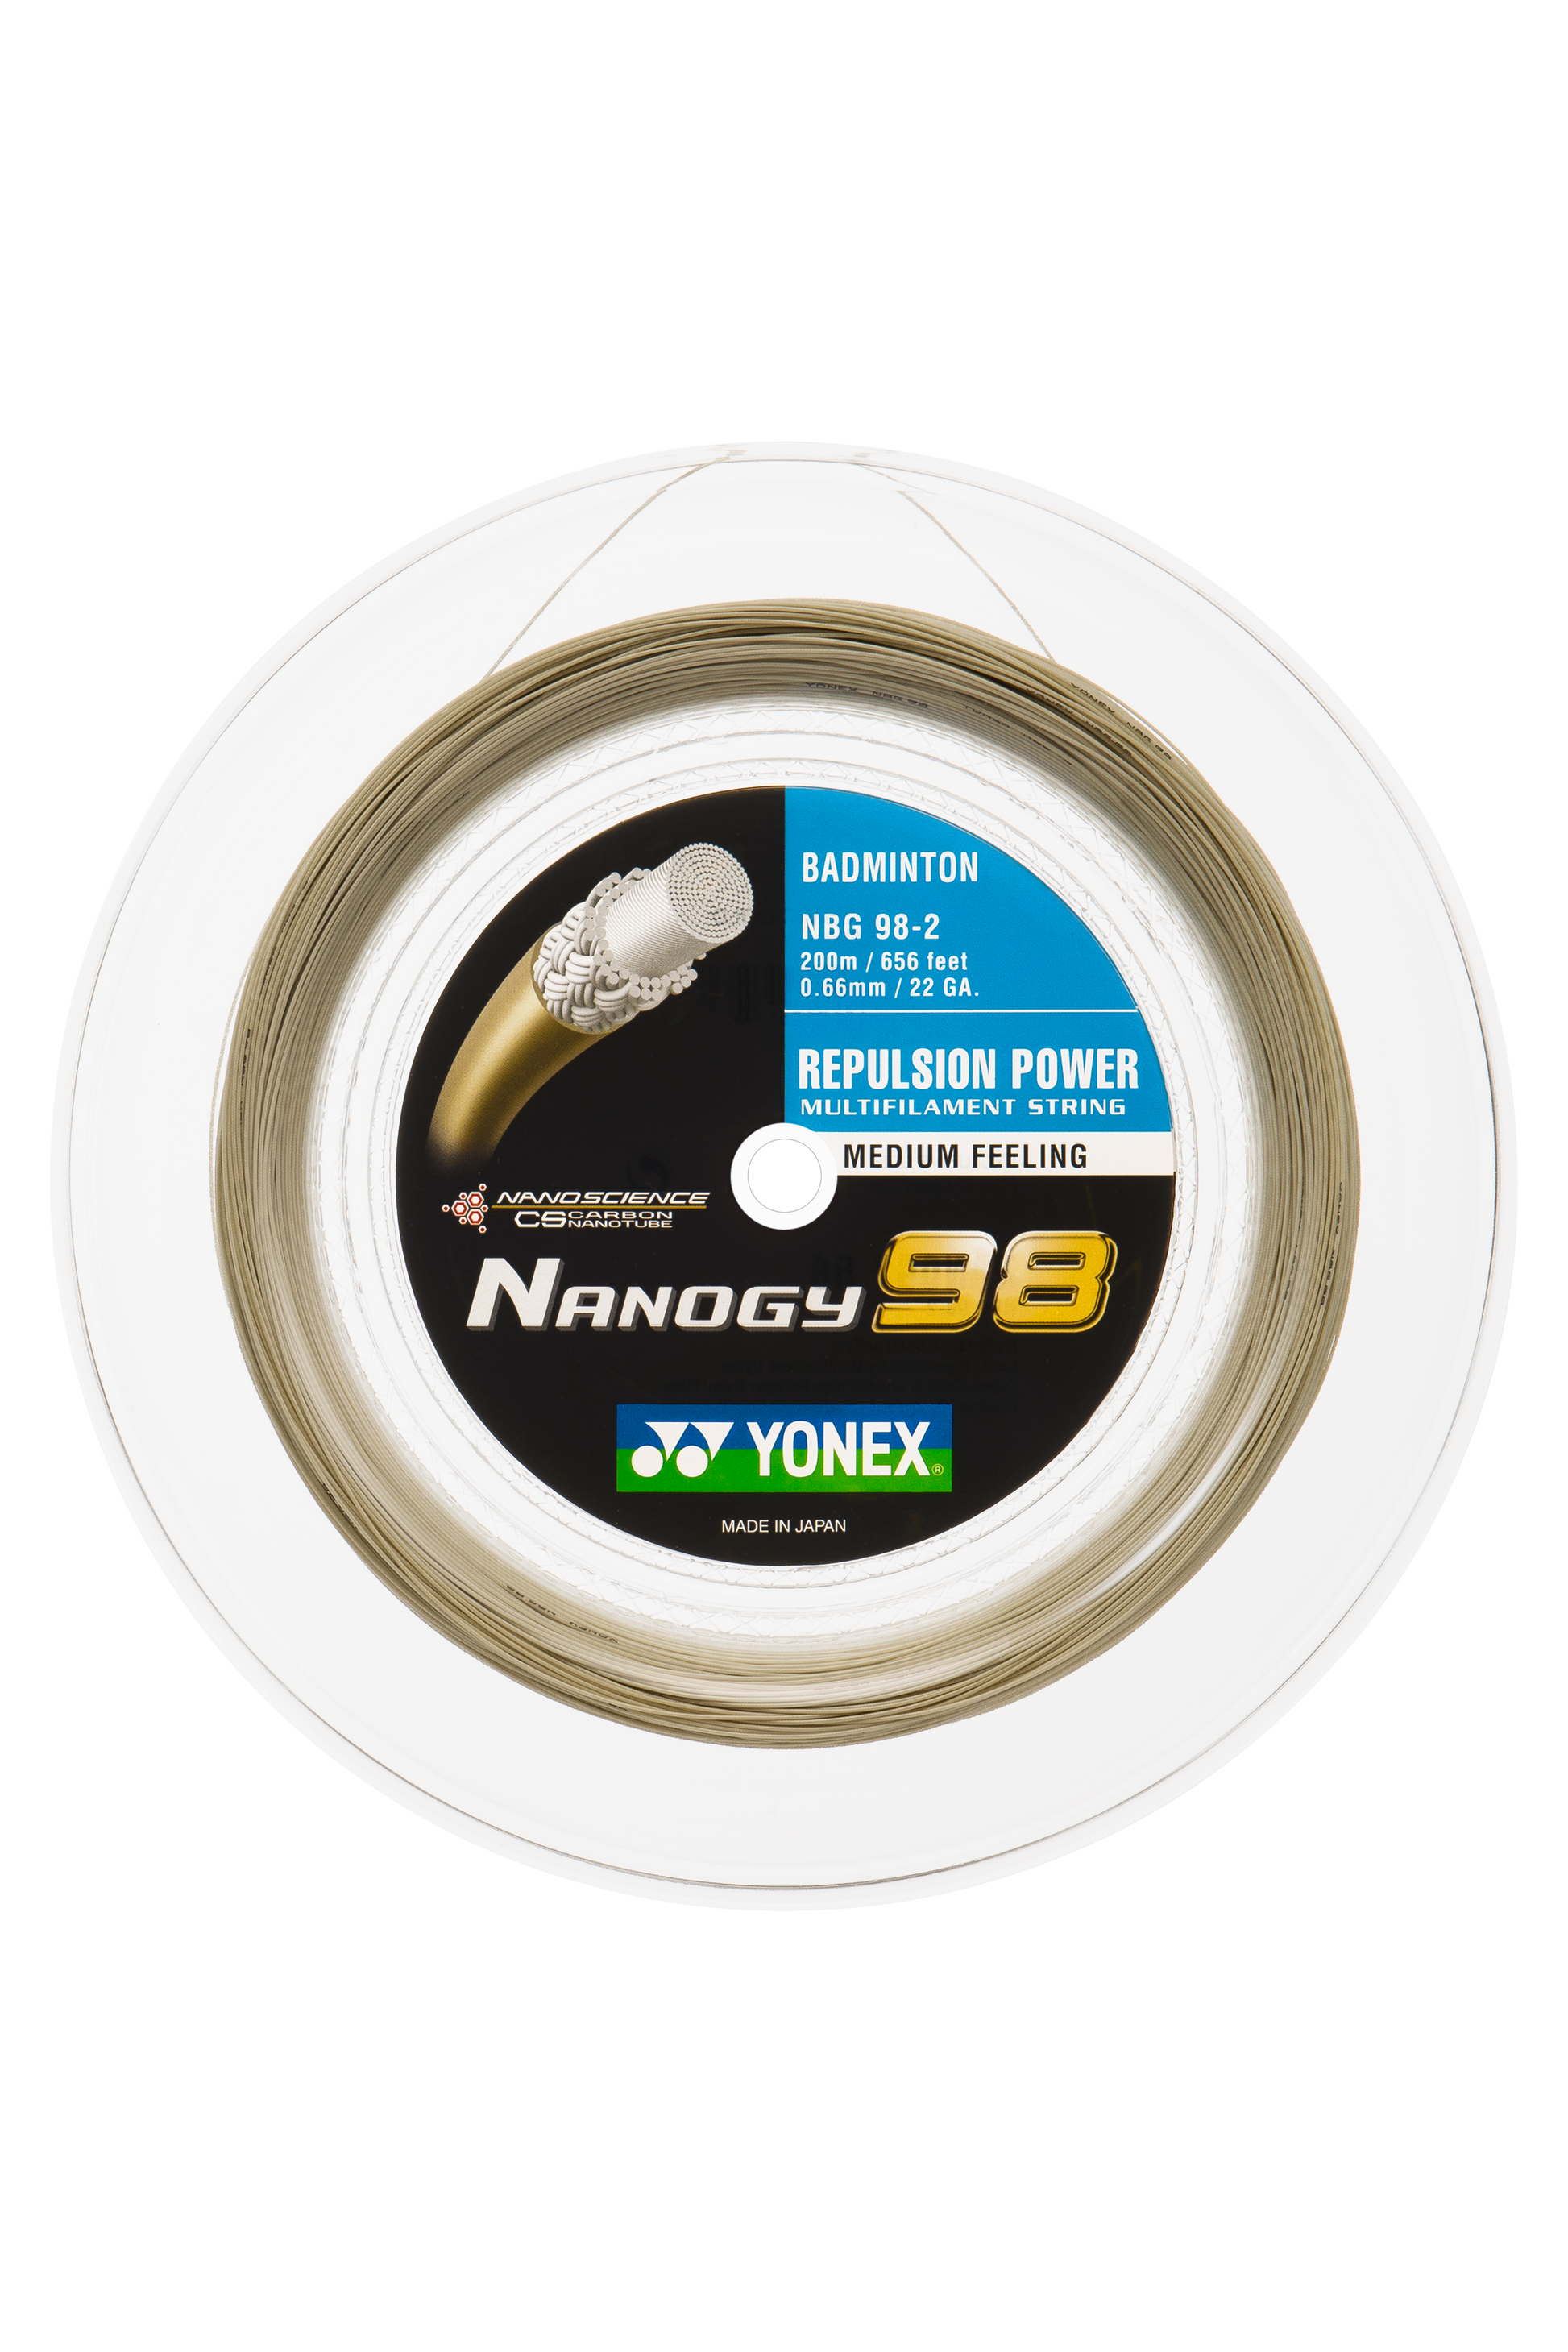 YONEX Badminton String NANOGY 98 200M Reel – Max Sports